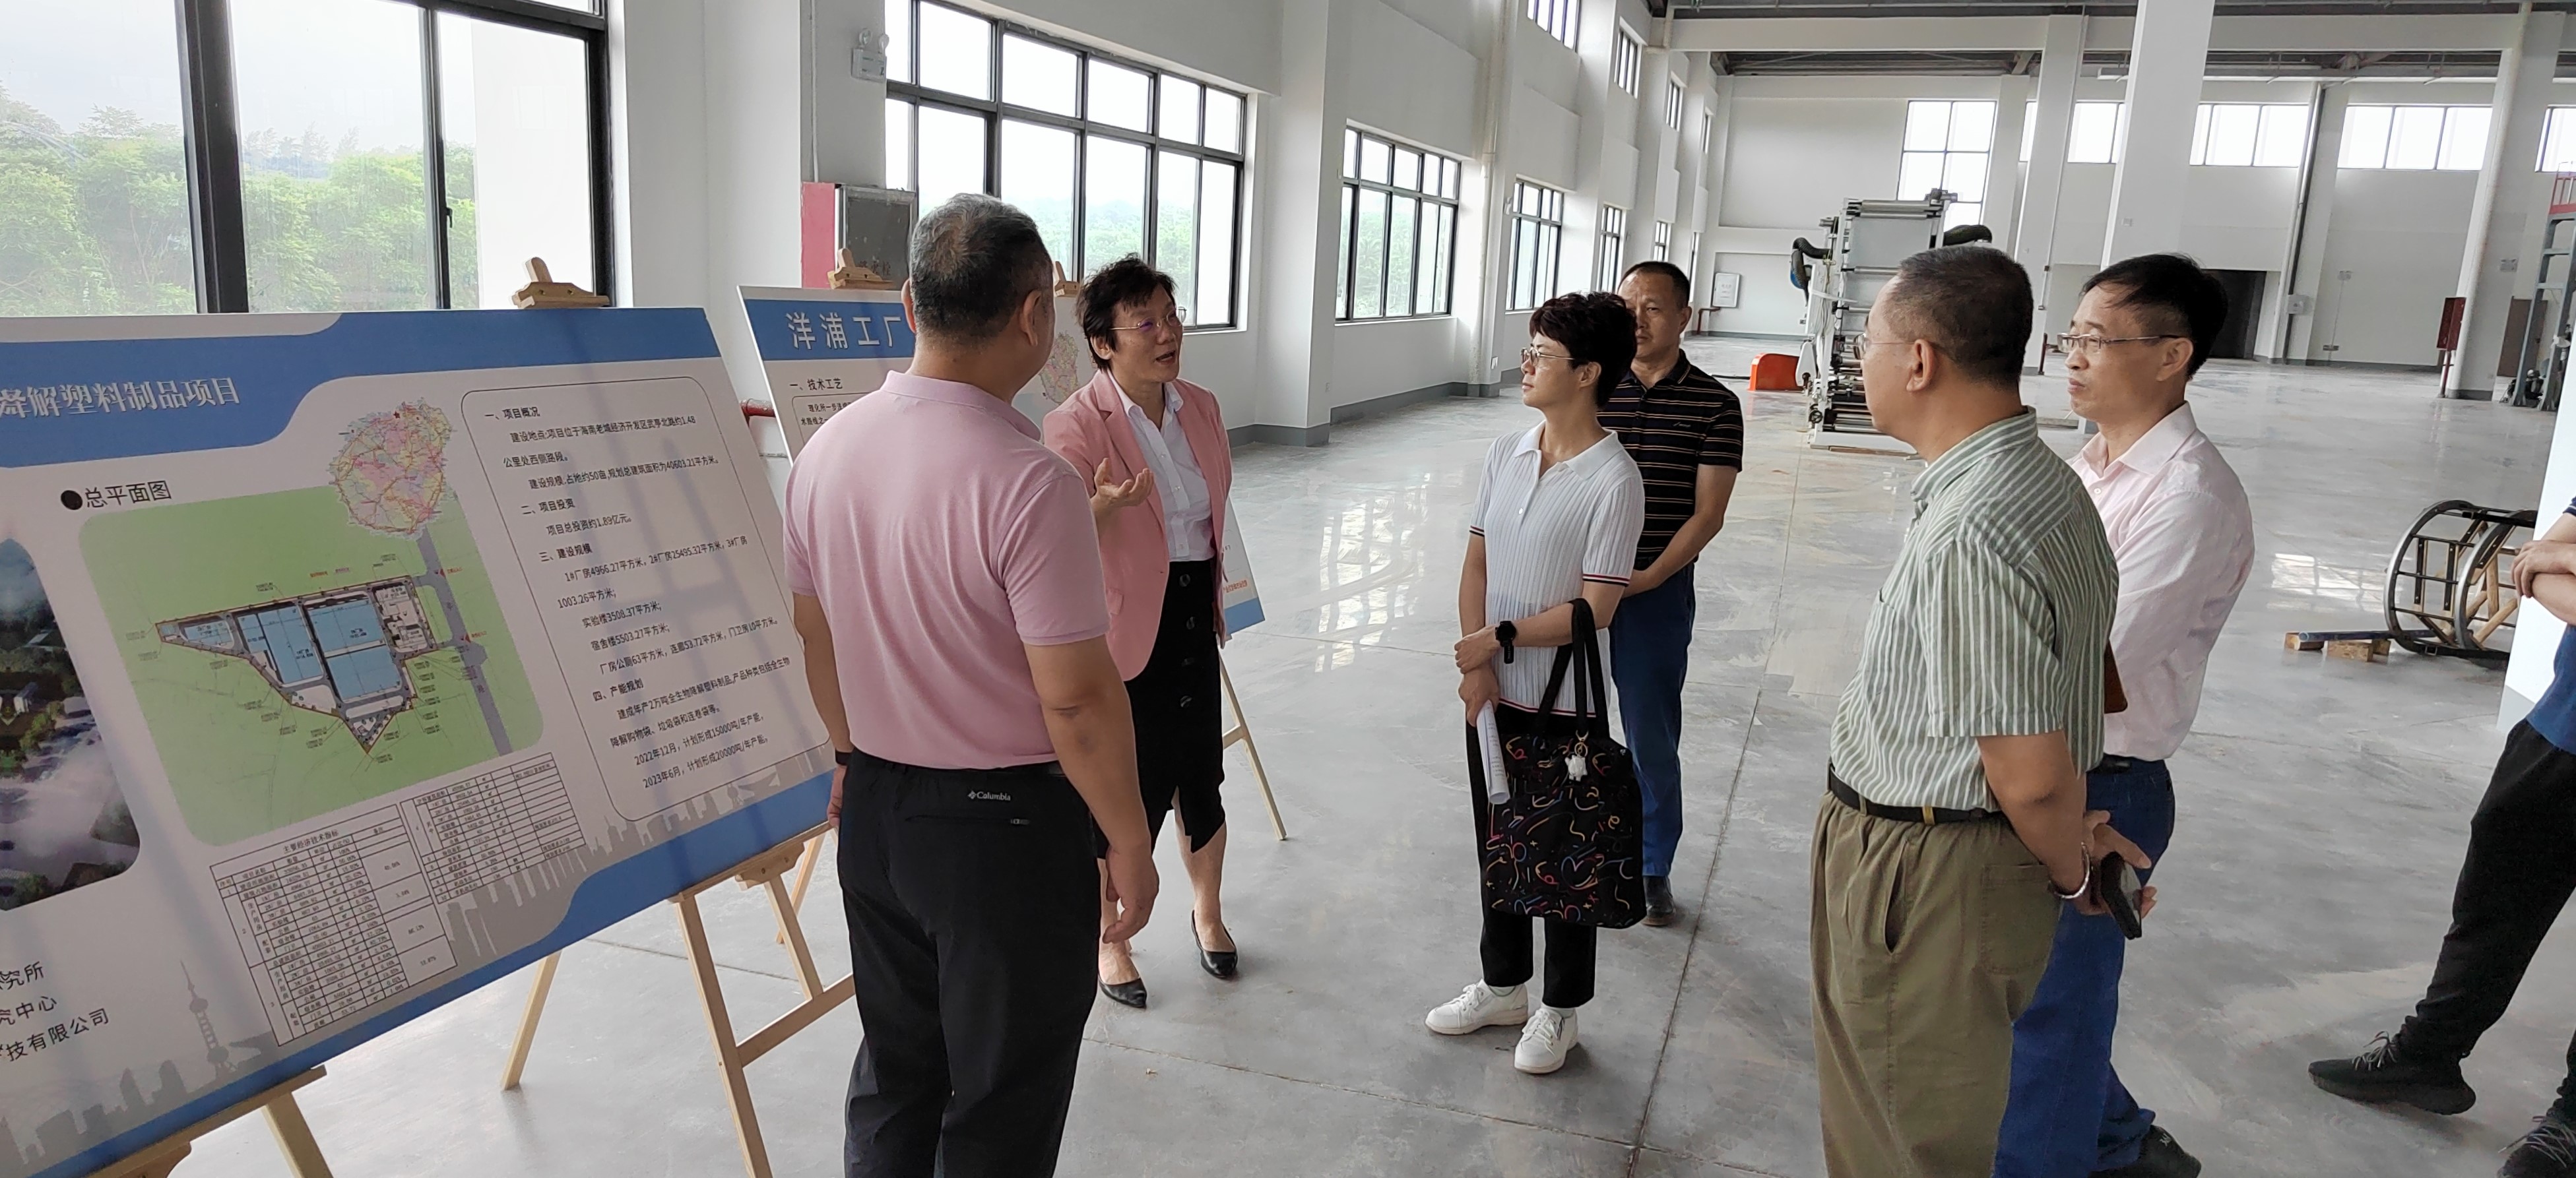 Хайнаньский инновационный центр по технологиям разлагаемого пластика - рабочие будни